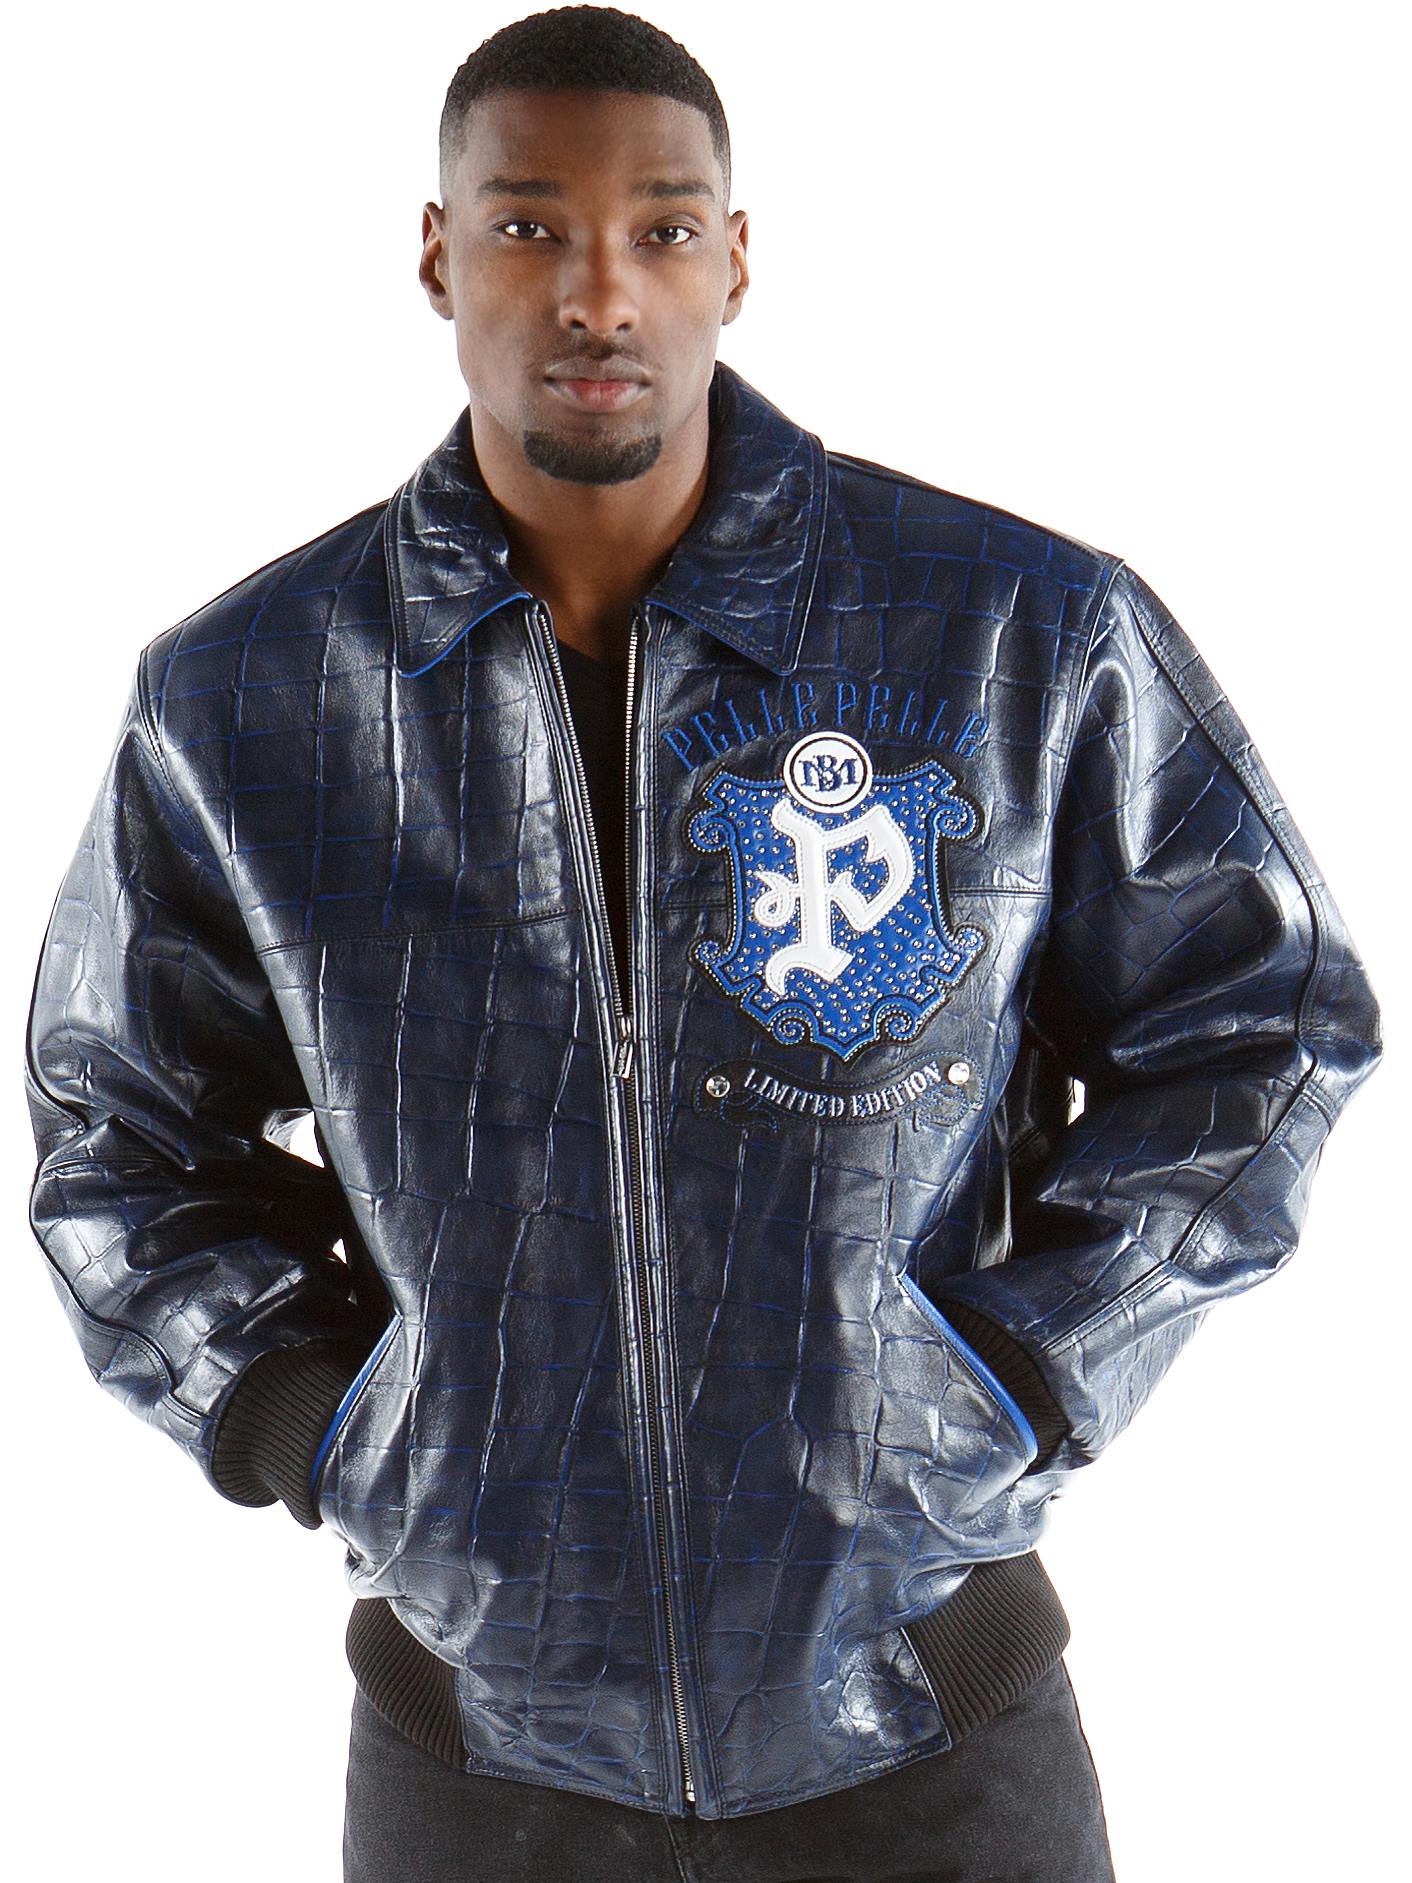 pelle-pelle-blue-leather-jacket,pelle-pelle-jacket,pelle-pelle-store,pelle-pelle-leather-jacket,blue-leather-jacket,blue-jacket